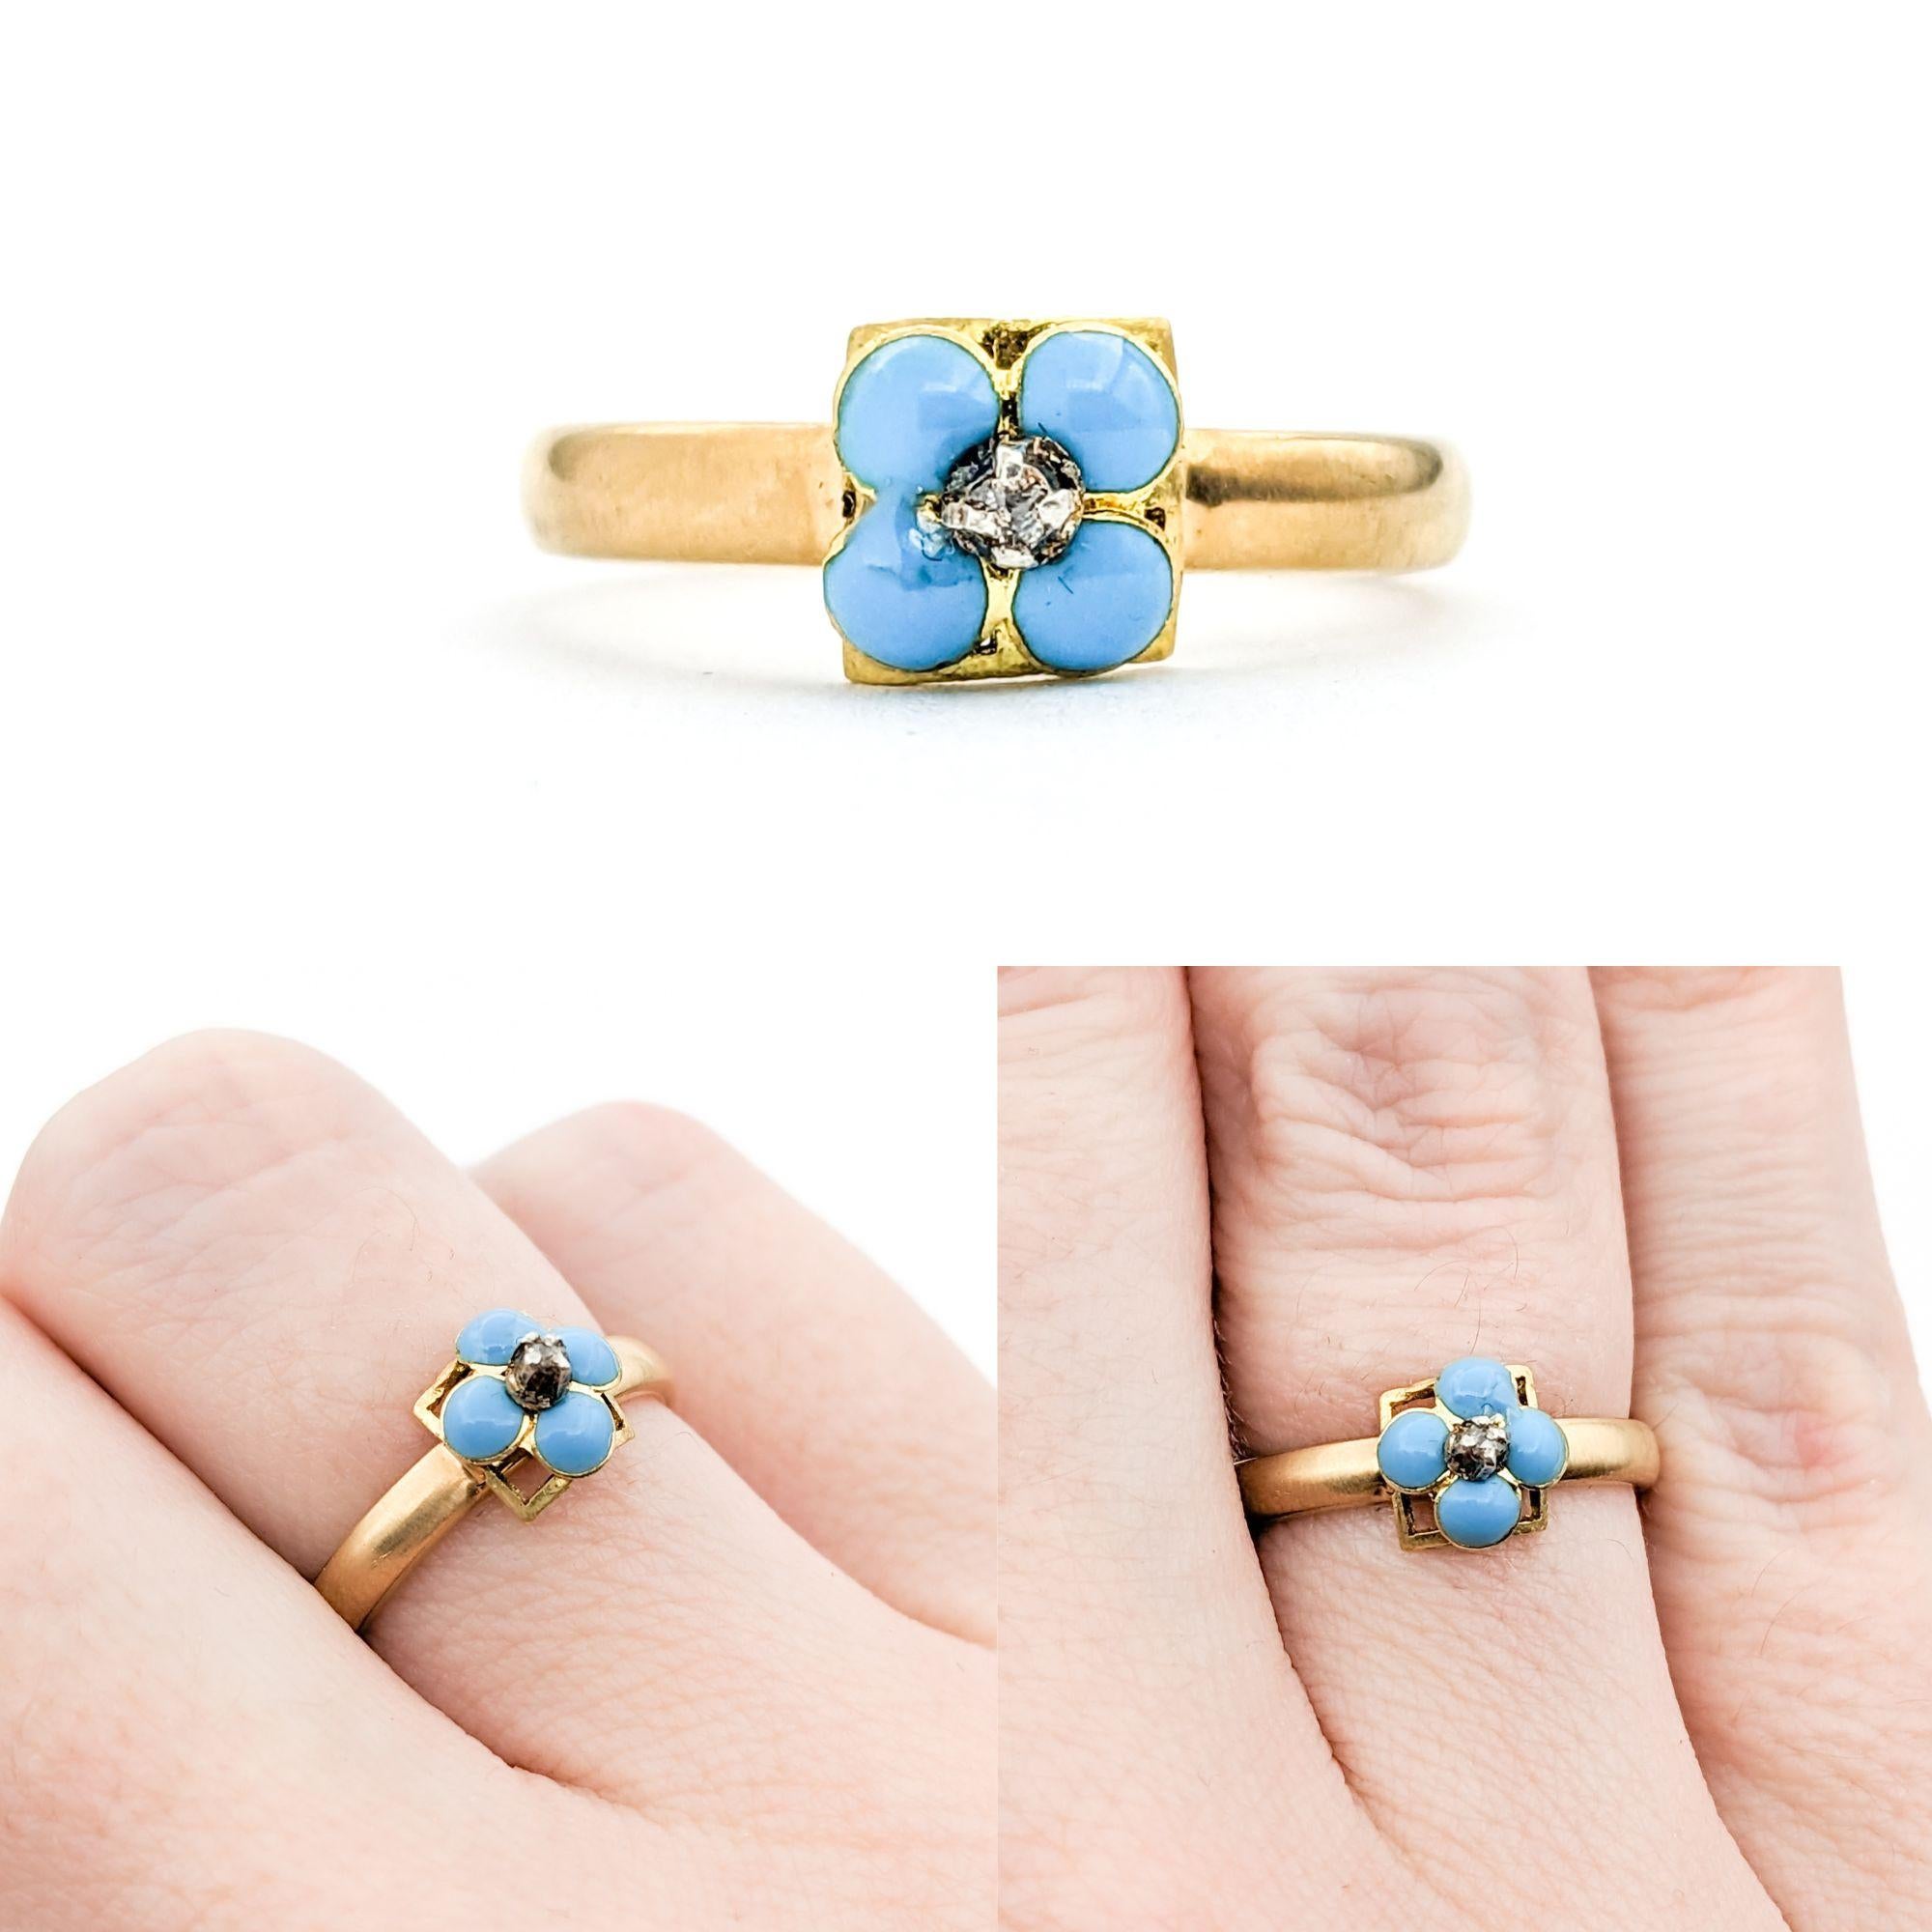 Antiker Vergissmeinnicht-Emaille & Diamant-Ring in Gelbgold

Wir stellen Ihnen diesen wunderschönen, antiken, sentimentalen Ring vor, der meisterhaft aus 18 Karat Gelbgold gefertigt ist. Der Mittelpunkt dieses besonderen Stücks ist eine blau